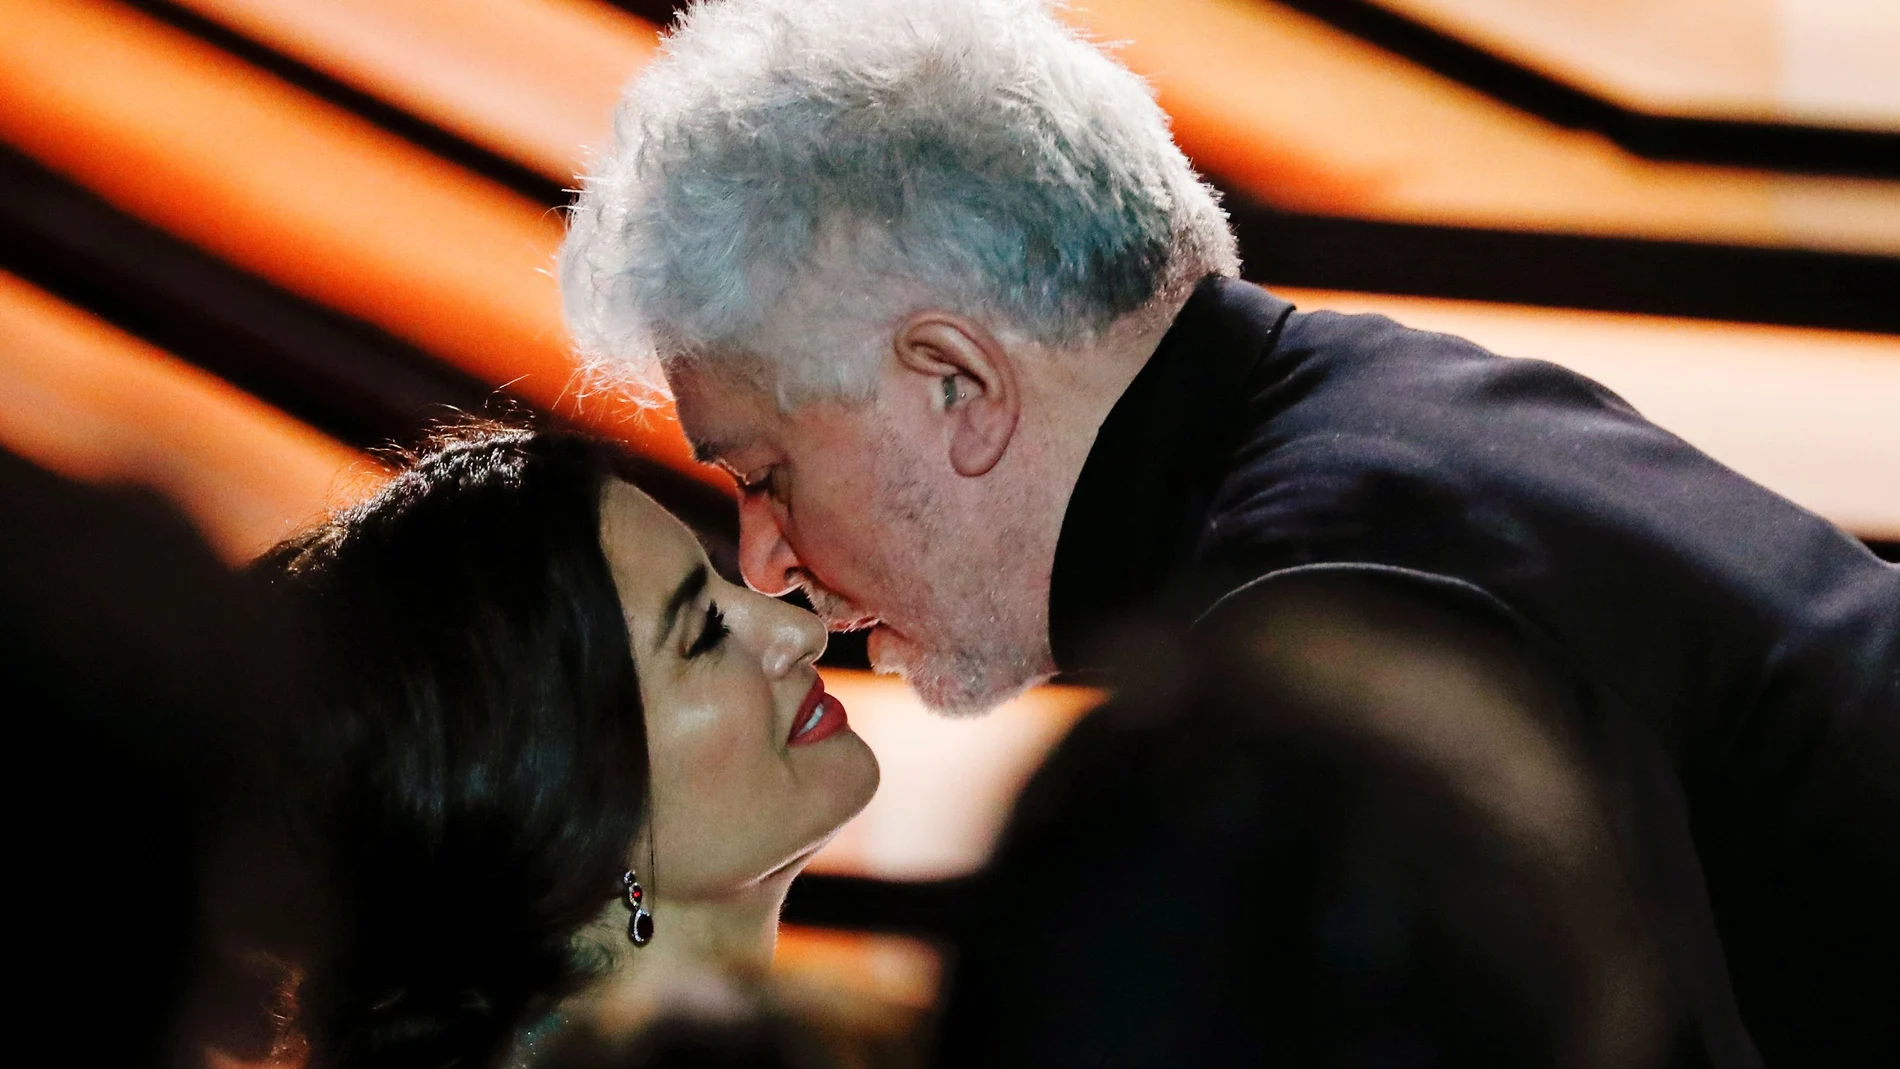 Pedro Almodóvar y Penélope Cruz se besan en el escenario de los Premios Goya 2020